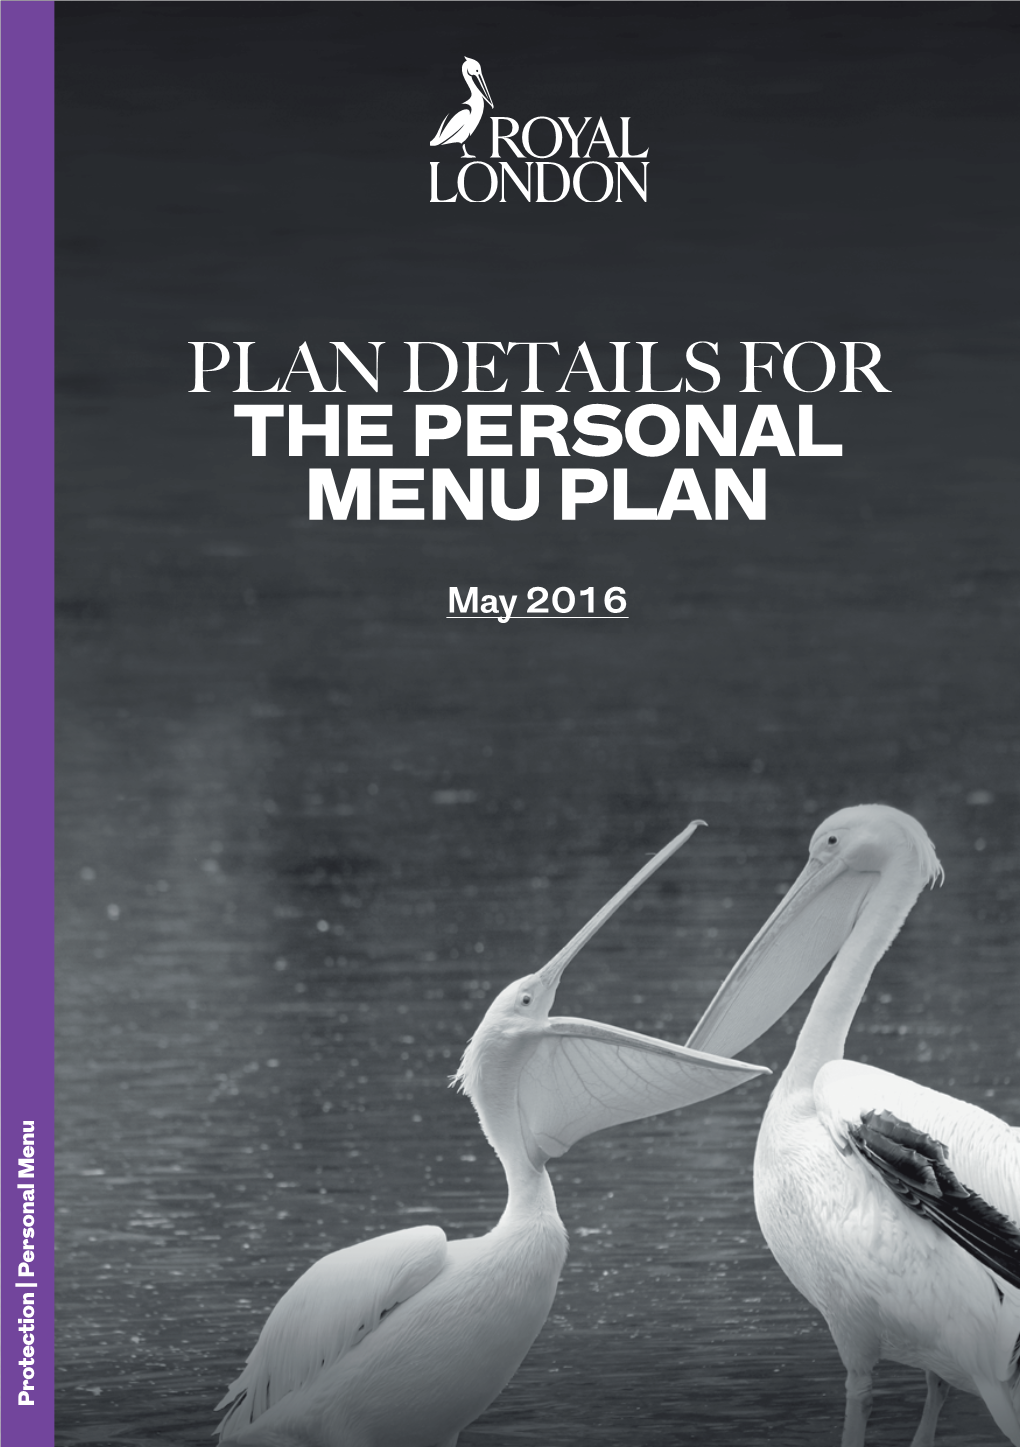 THE PERSONAL MENU PLAN May 2016